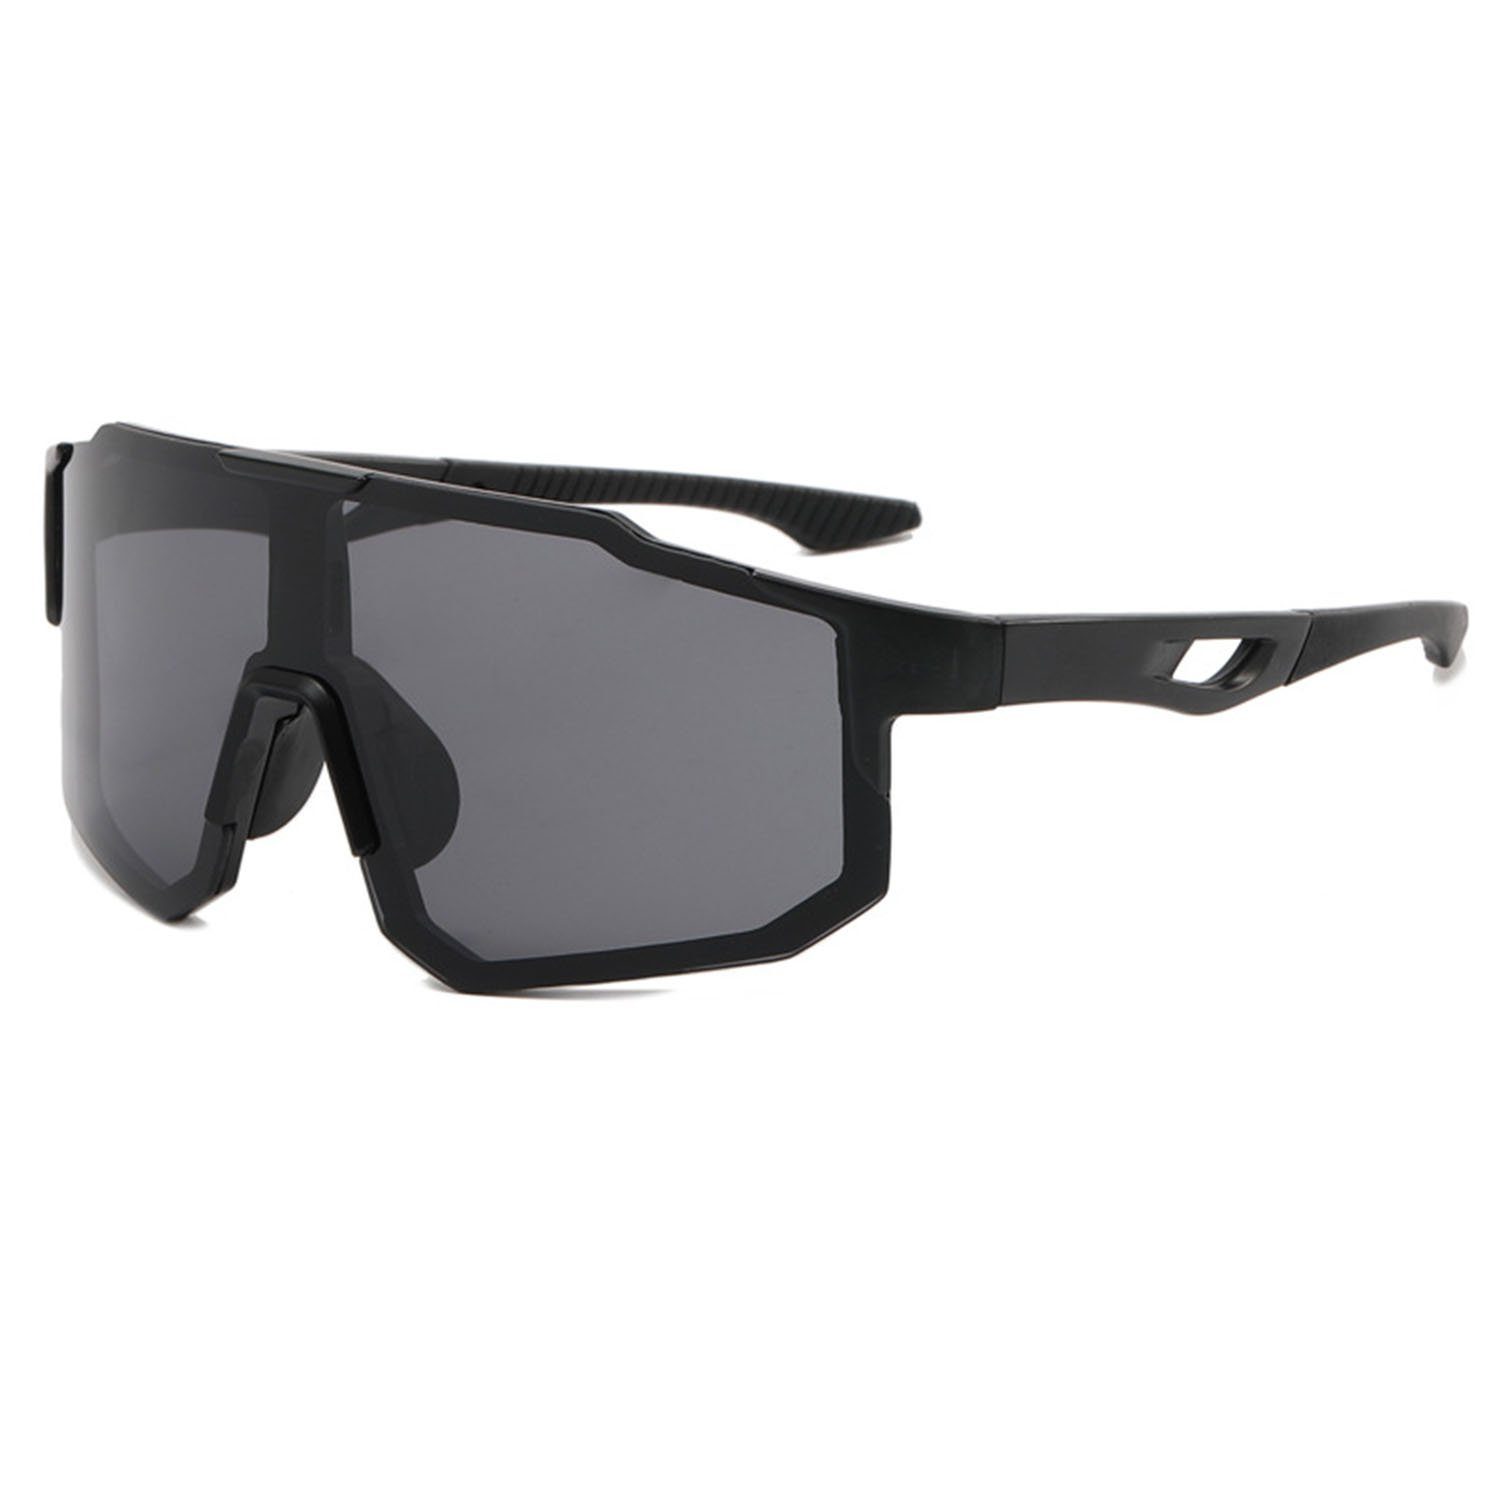 MAGICSHE Fahrradbrille Fahrradbrillen für Herren und Damen, Sport-Sonnenbrillen, Windschutzscheibe, UV-beständige und klare Sicht Brille Schwarzer Rahmen und grauer Fleck